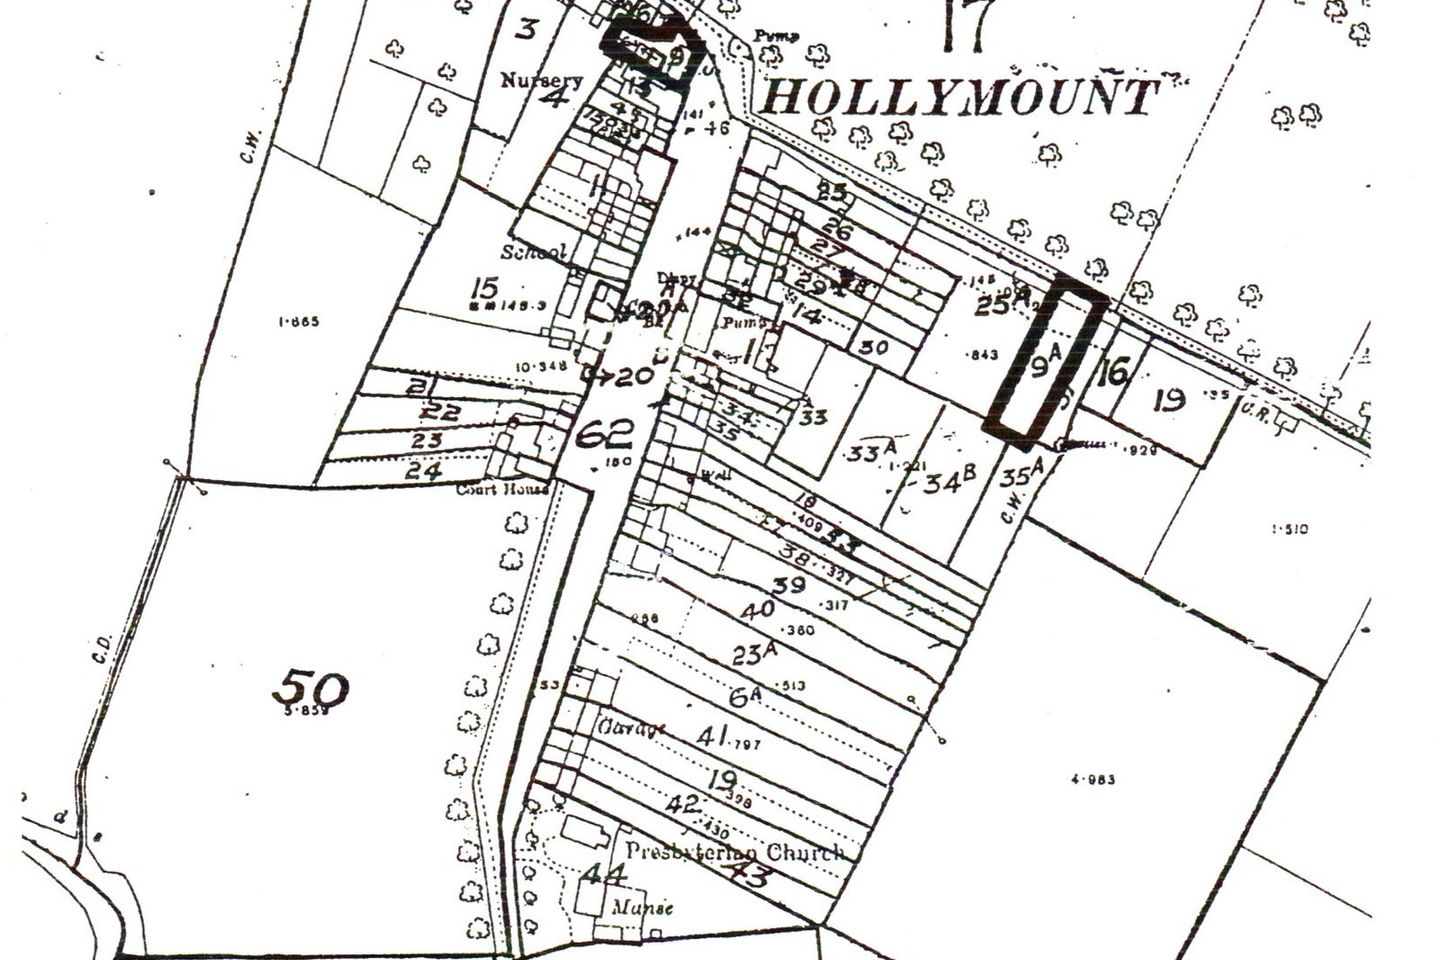 Hollymount, Hollymount, Co. Mayo